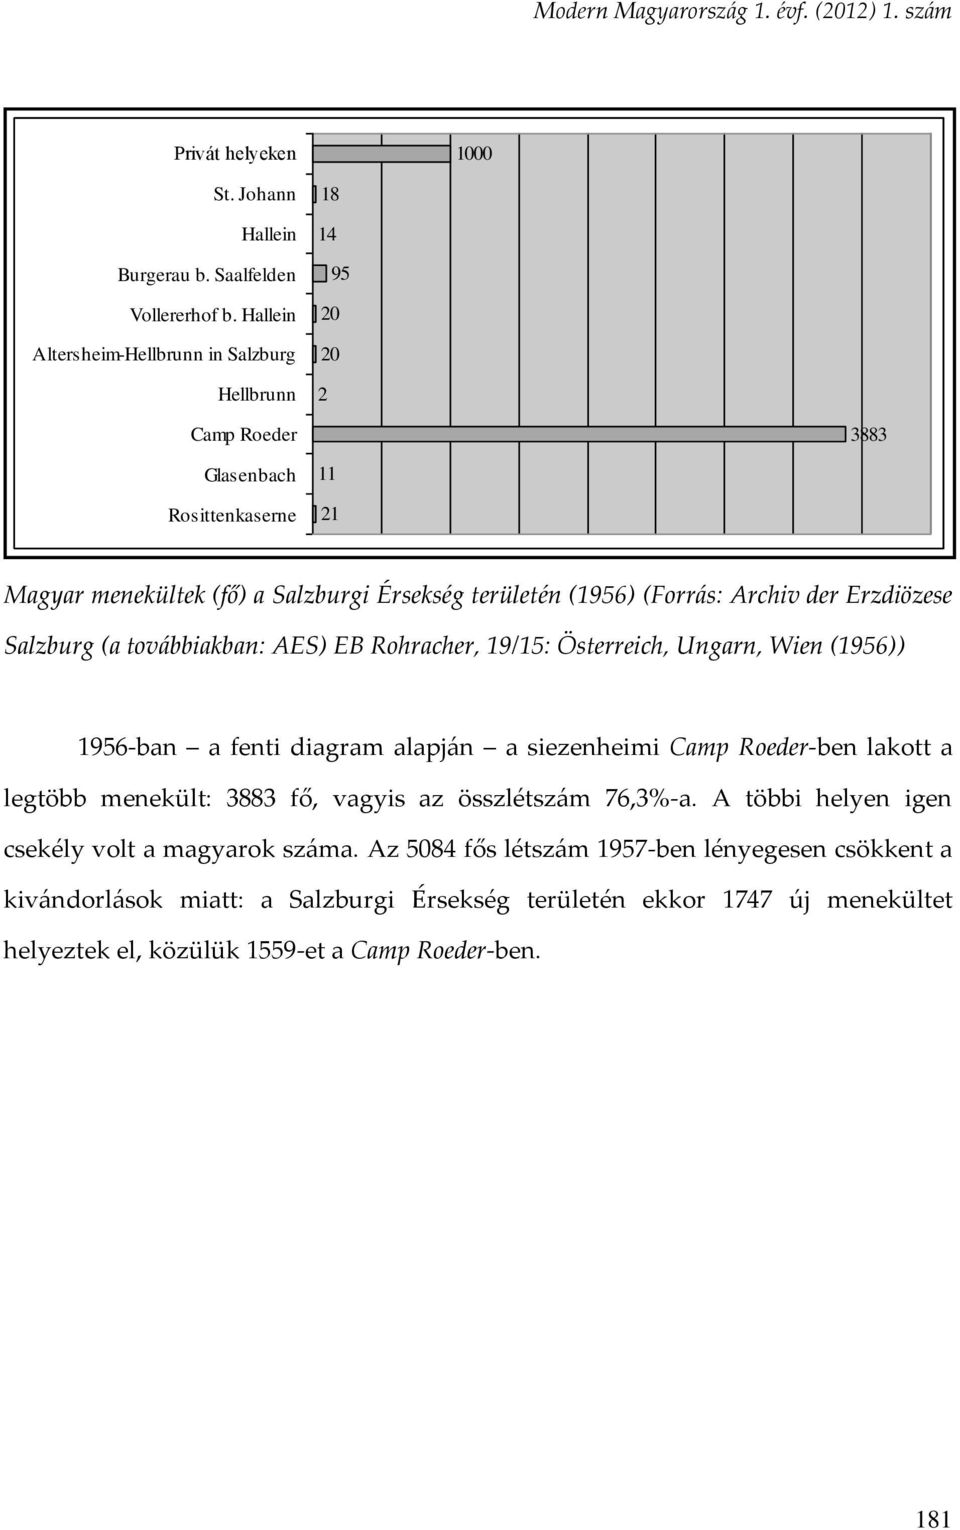 (Forrás: Archiv der Erzdiözese Salzburg (a továbbiakban: AES) EB Rohracher, 19/15: Österreich, Ungarn, Wien (1956)) 1956-ban a fenti diagram alapján a siezenheimi Camp Roeder-ben